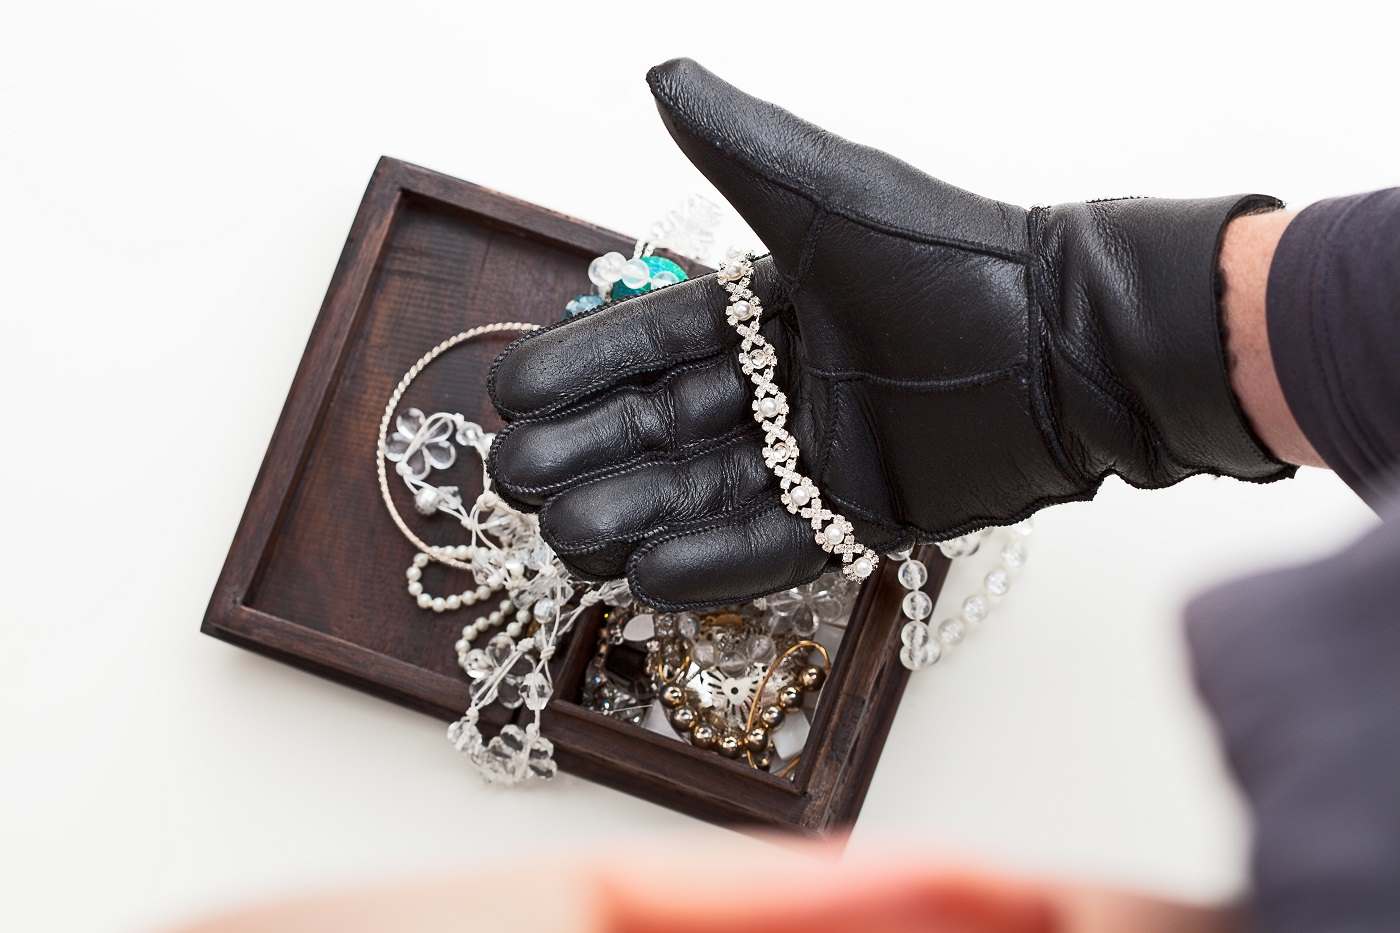 Dans les deux cas, les usurpateurs ont fait main basse sur les bijoux et cartes bancaires - Illustration © iStock